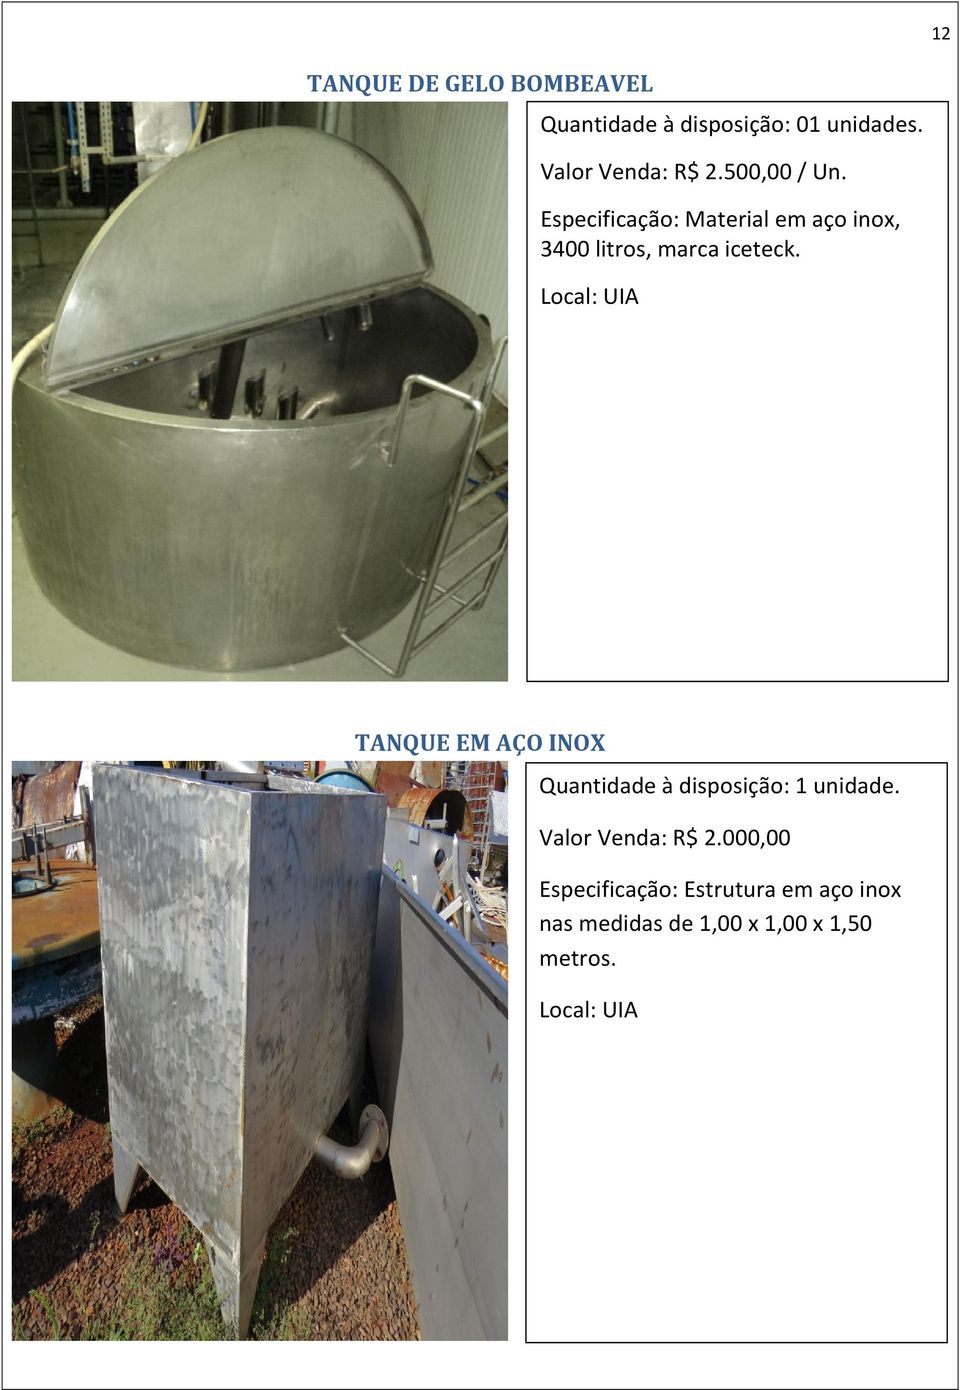 Especificação: Material em aço inox, 3400 litros, marca iceteck.